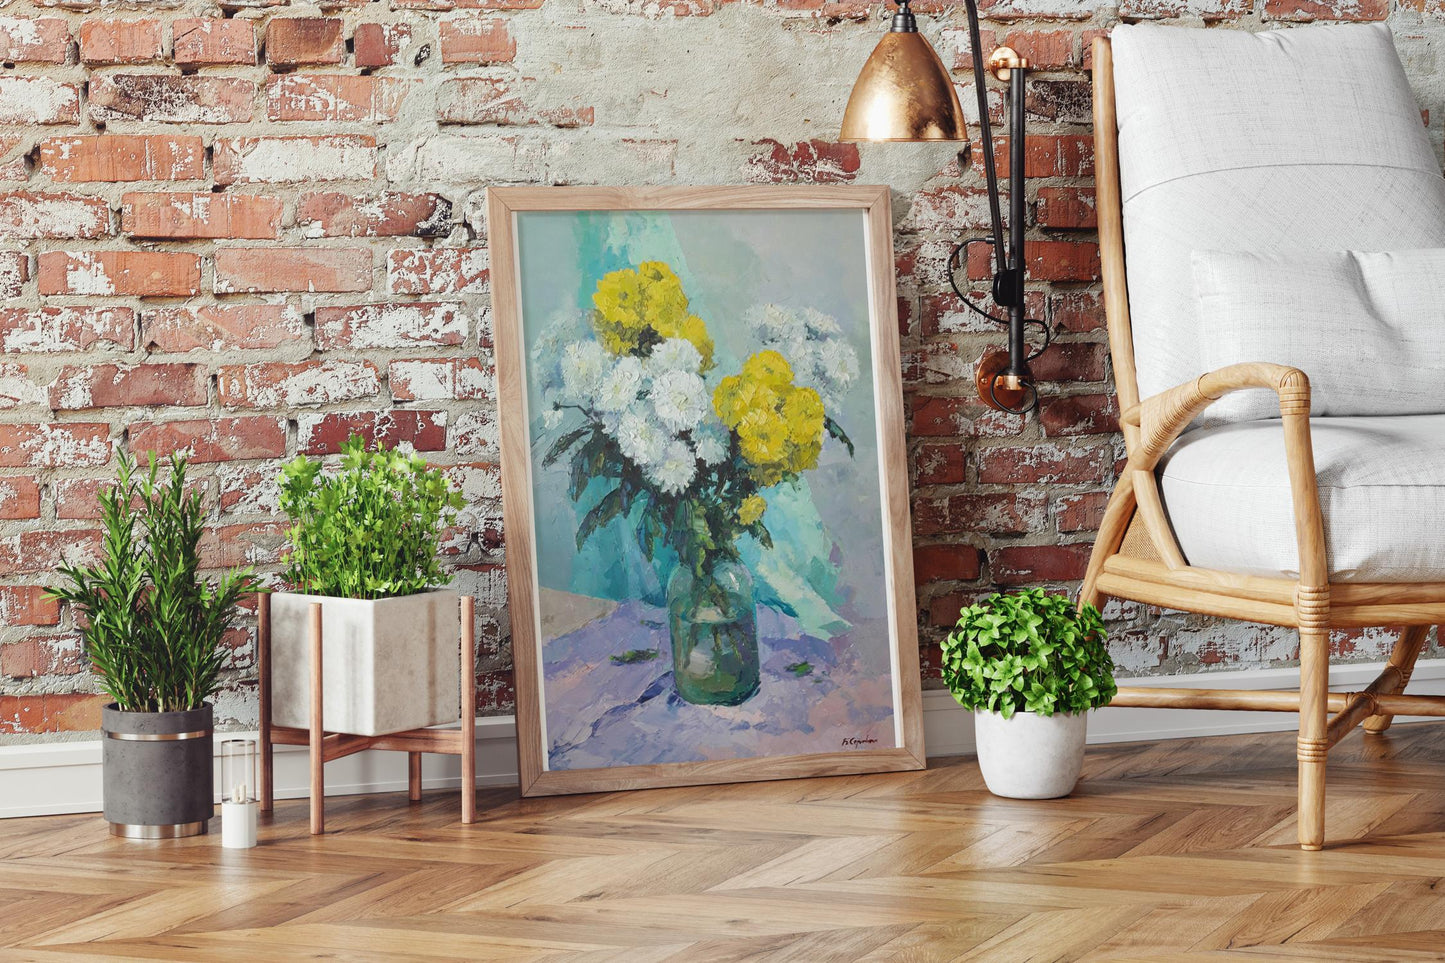 Oil painting Chrysanthemums Serdyuk Boris Petrovich №SERB 511